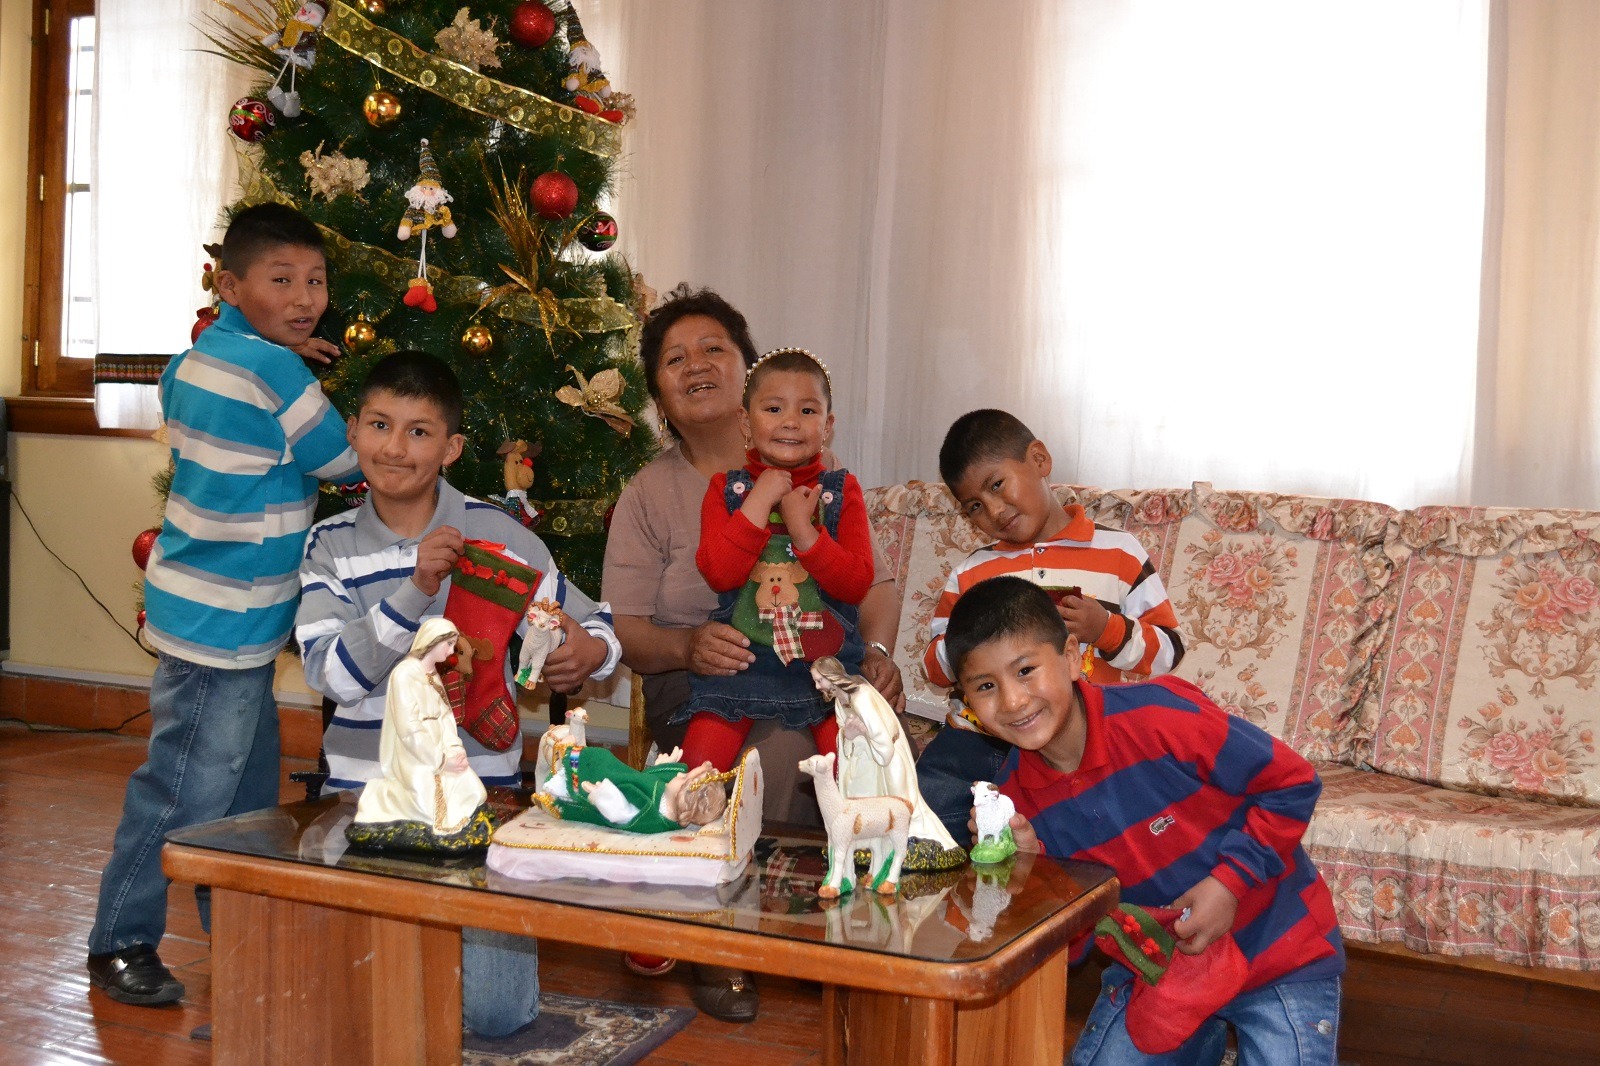 A Noël, l'atmosphère du SOS Village d'enfants  Potosí en Bolivie change comme par magie.